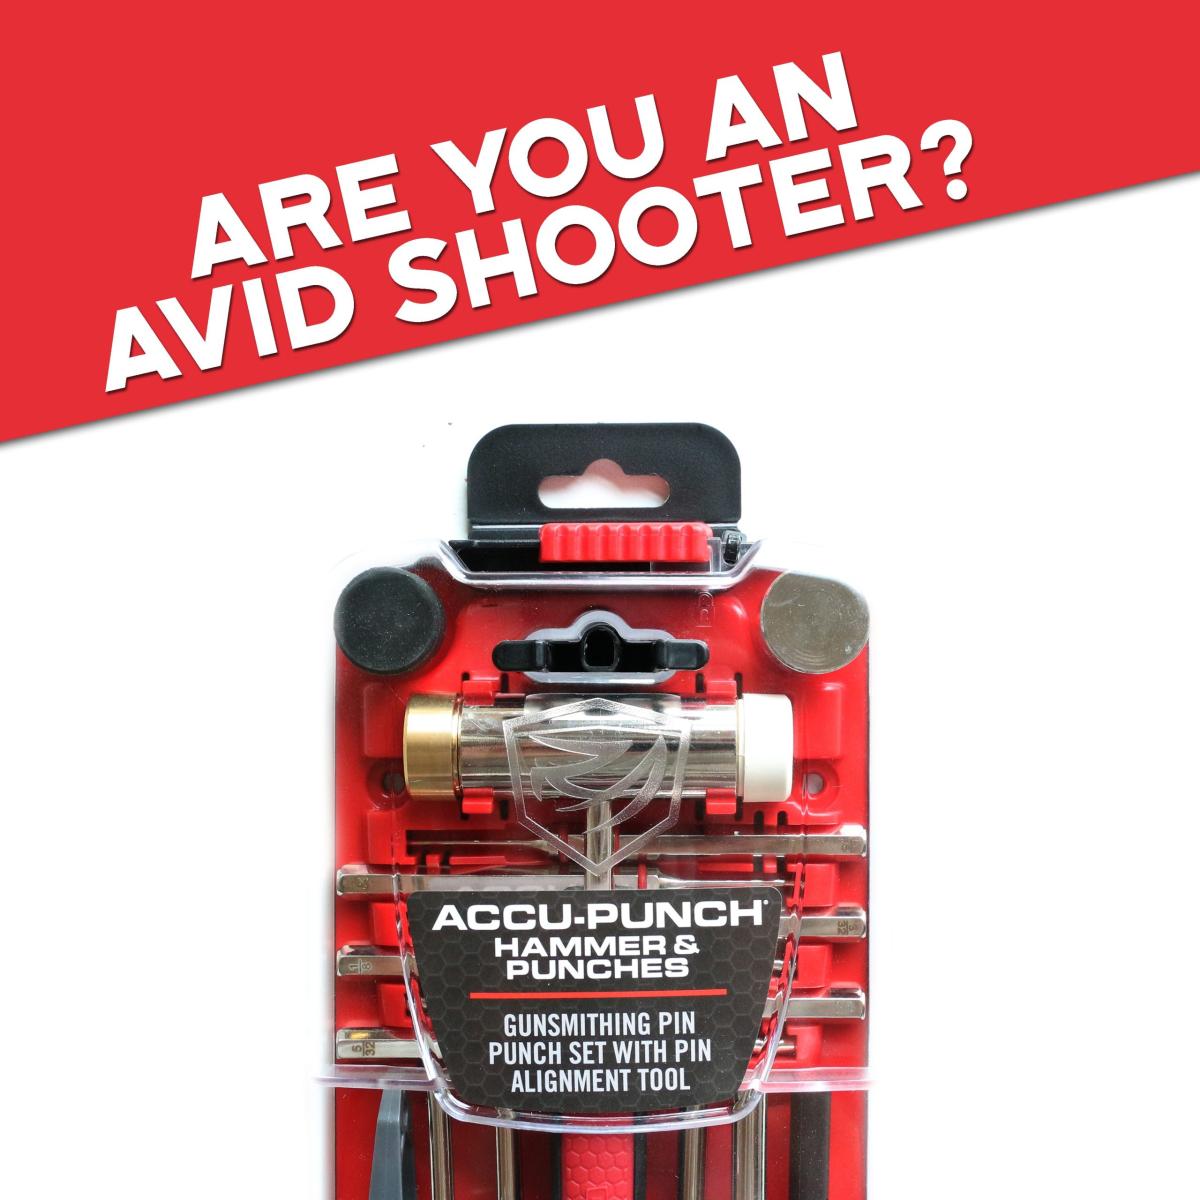 Real Avid Gunsmithing Tools For Avid Shooters